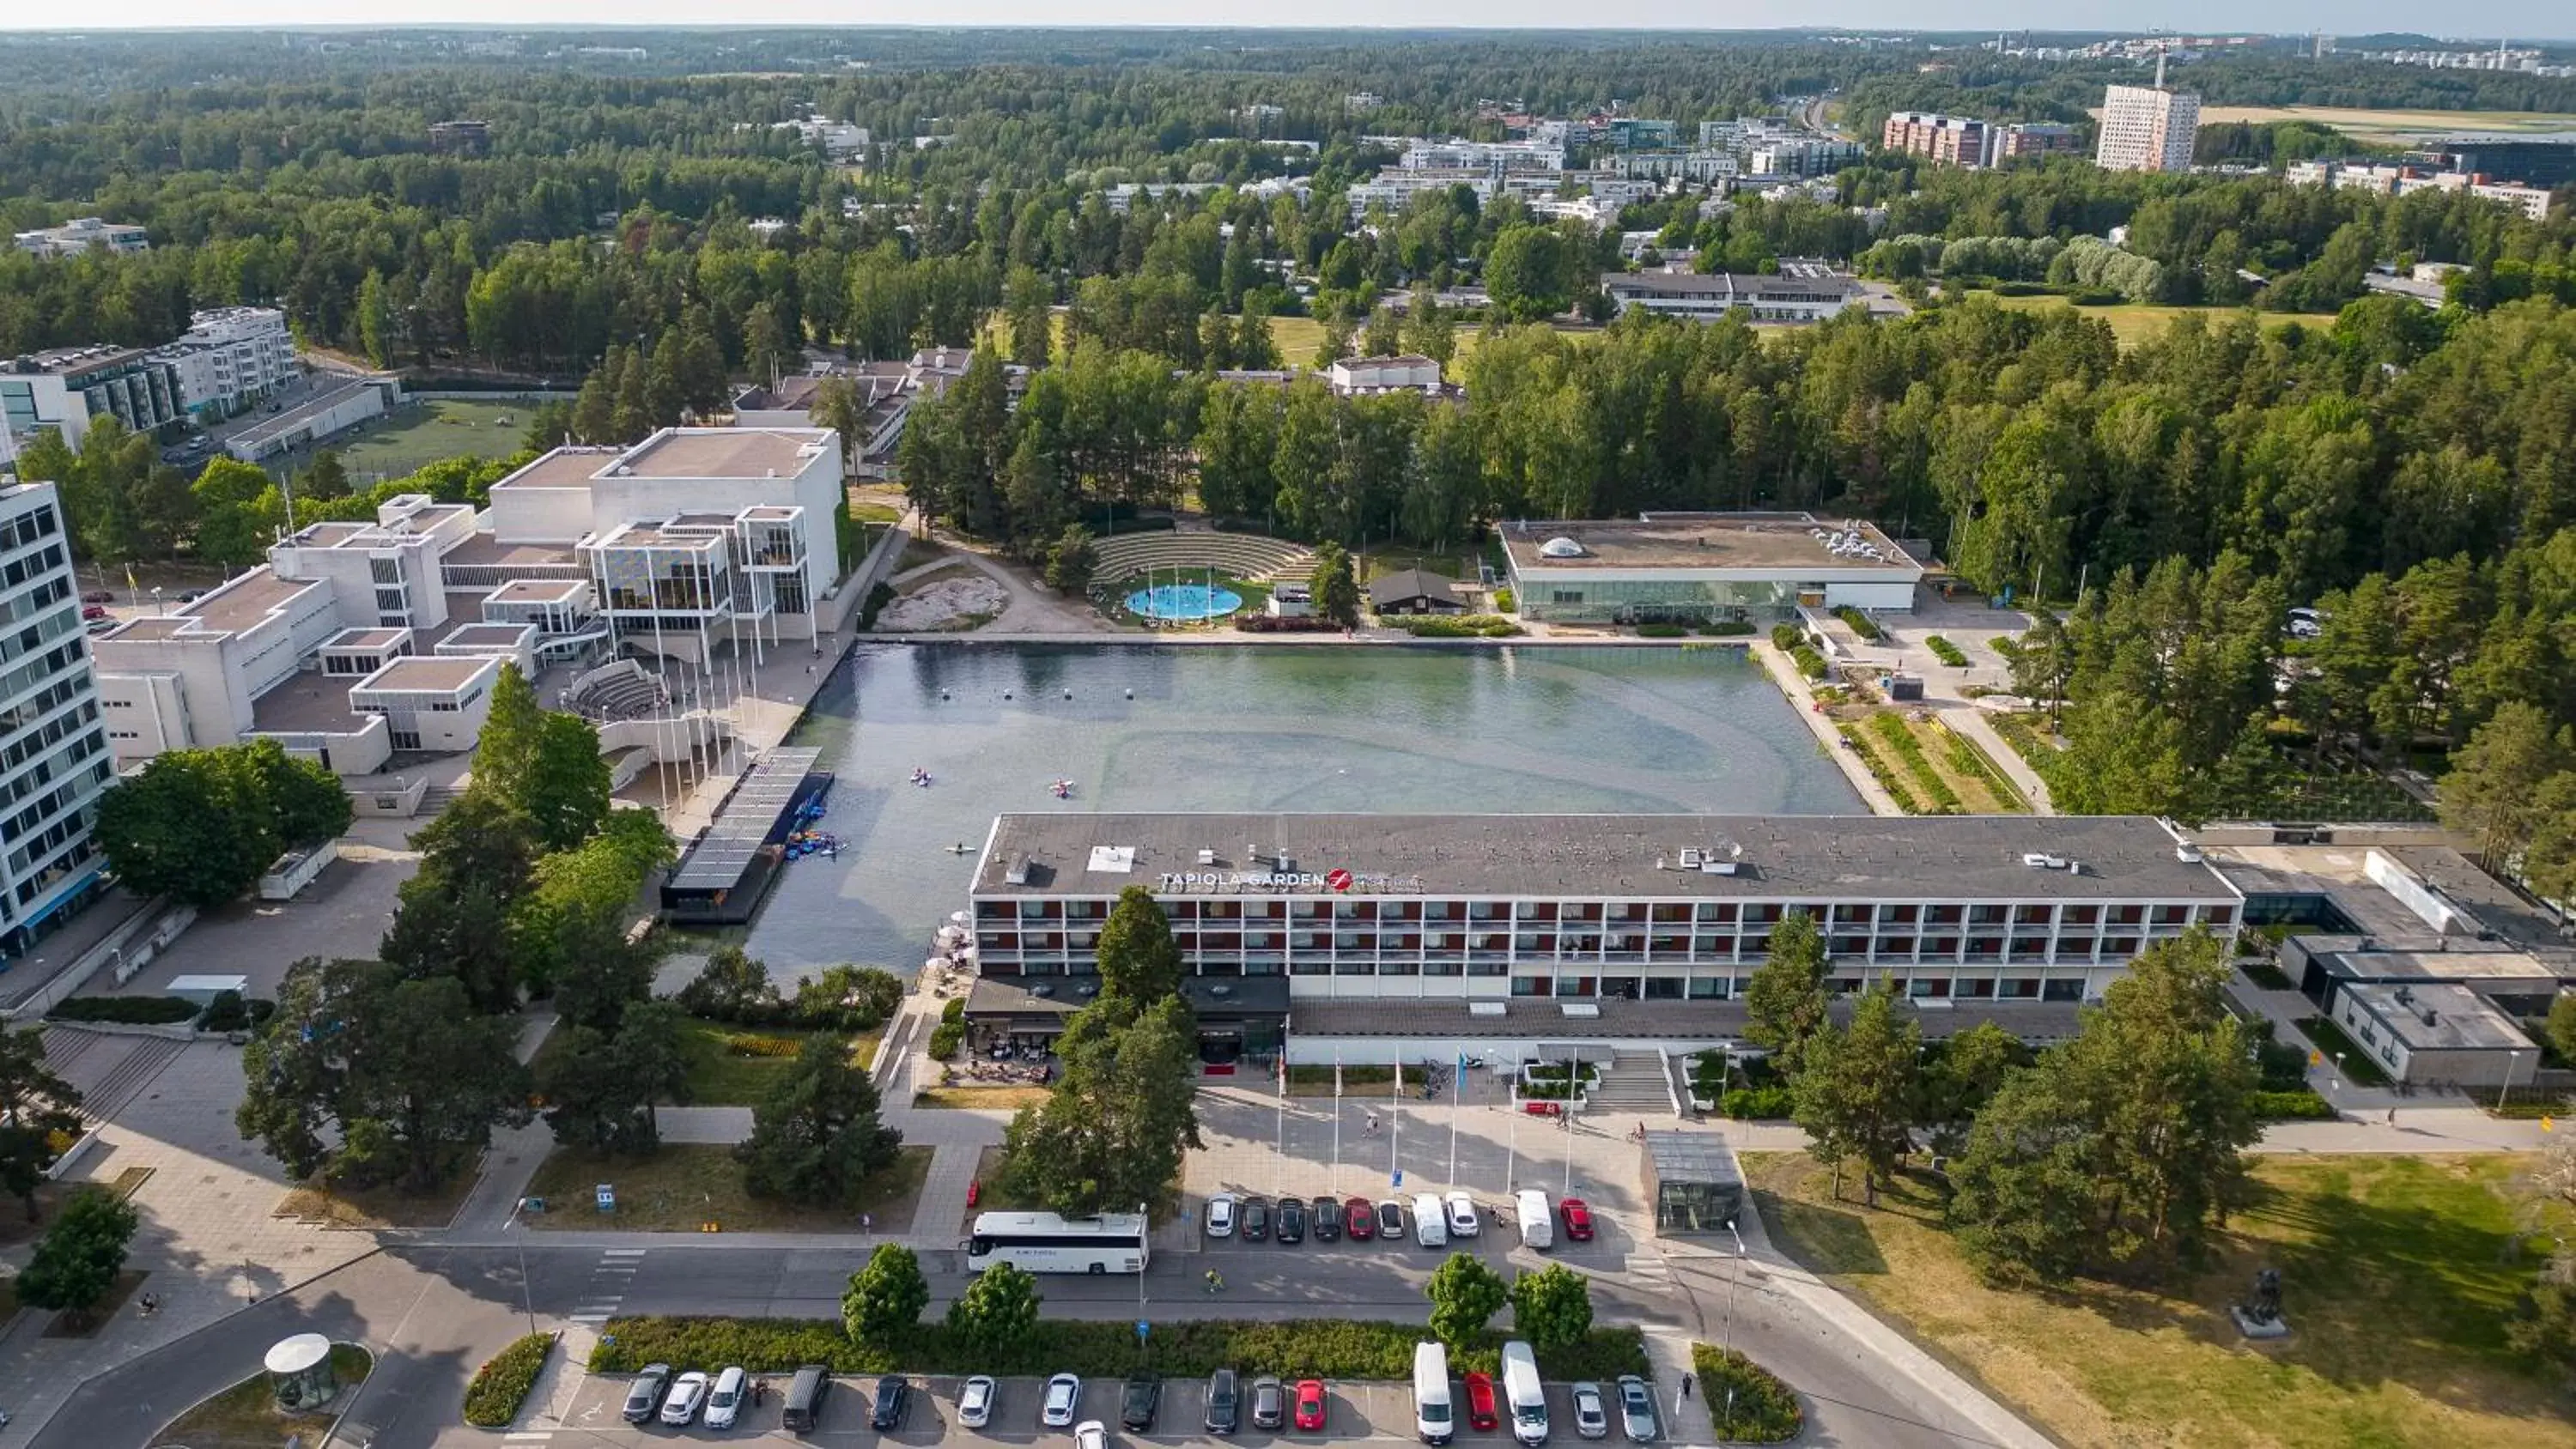 Property building, Bird's-eye View in Original Sokos Hotel Tapiola Garden Espoo